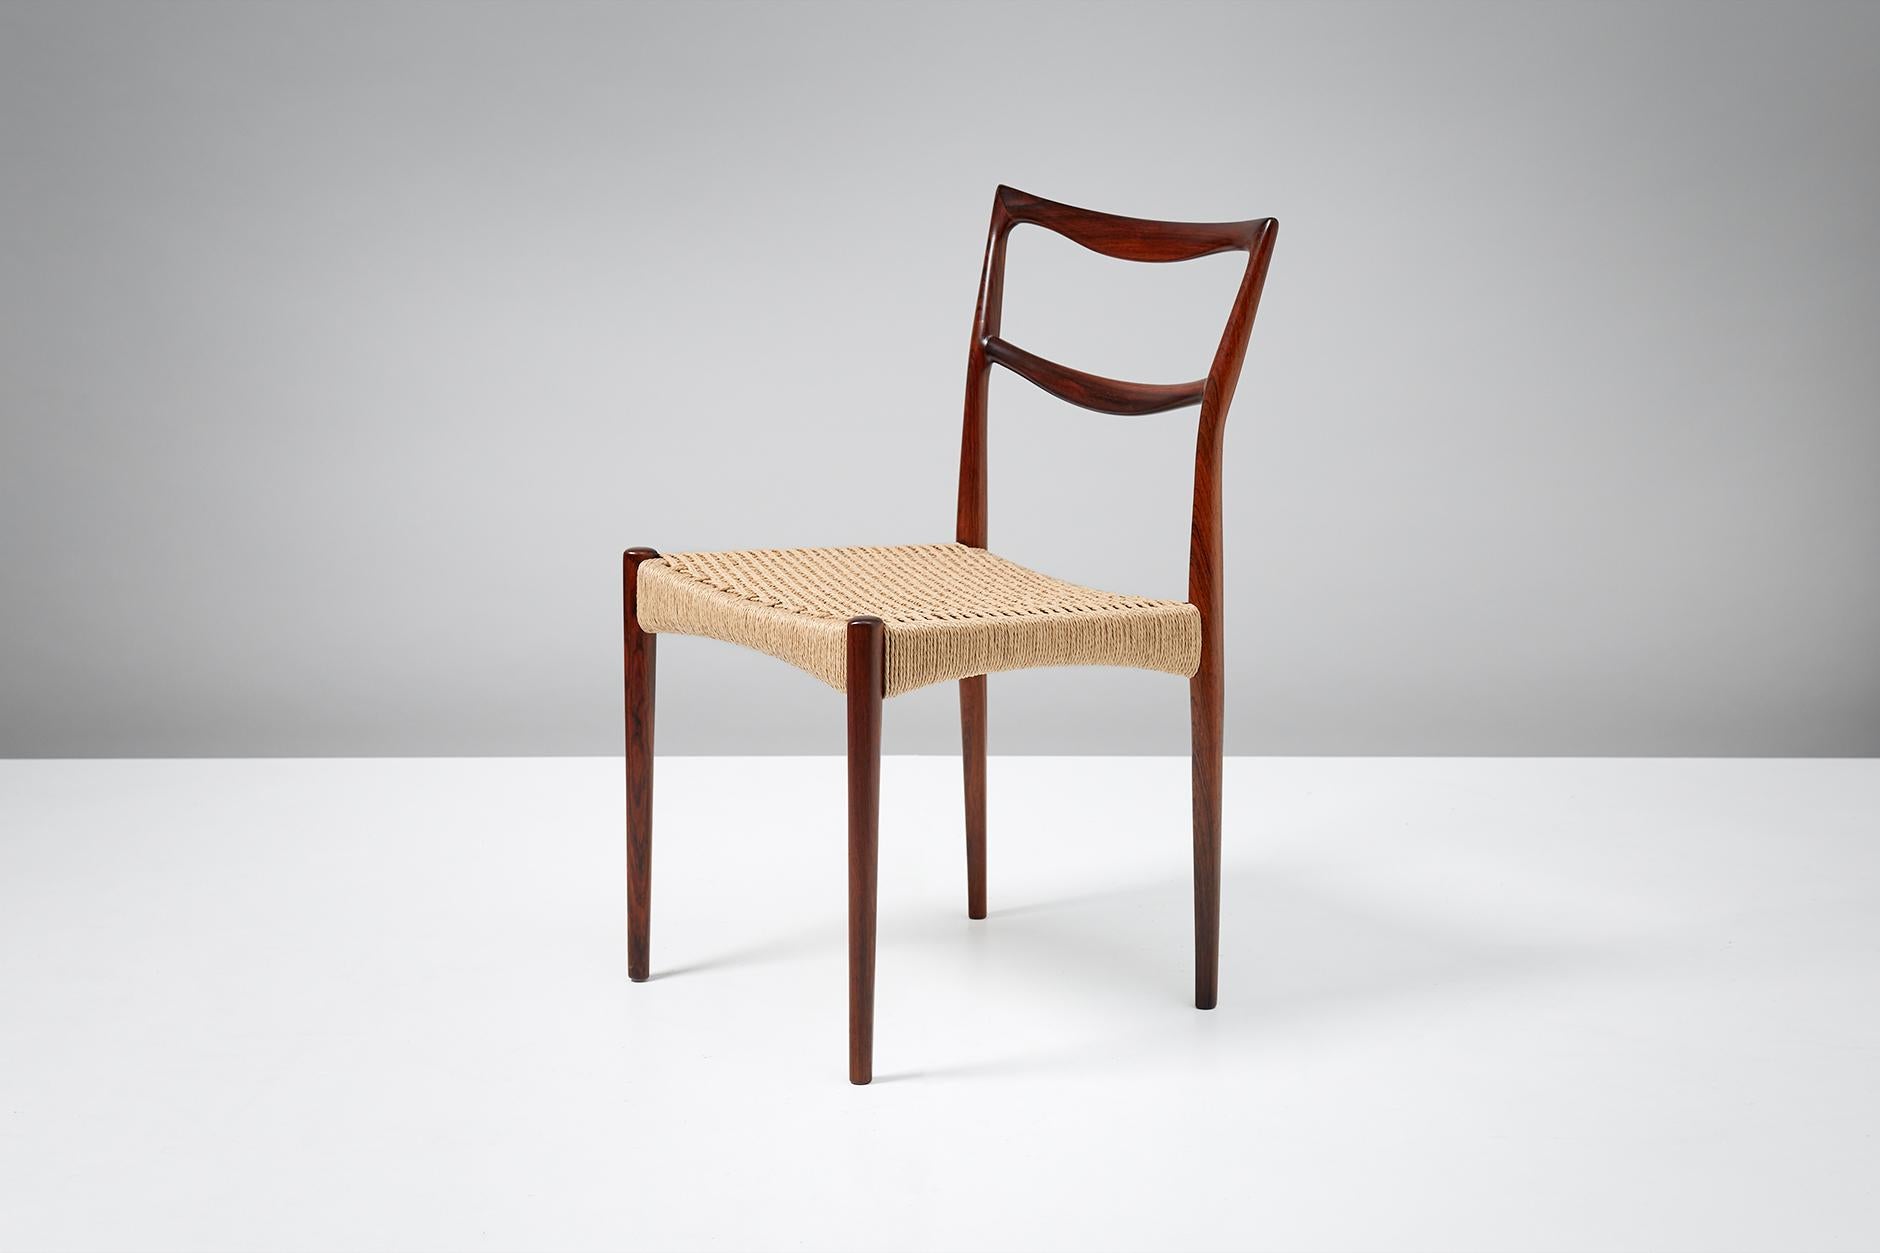 H.W. Klein Rosewood Side Chair, 1950s (Skandinavische Moderne)